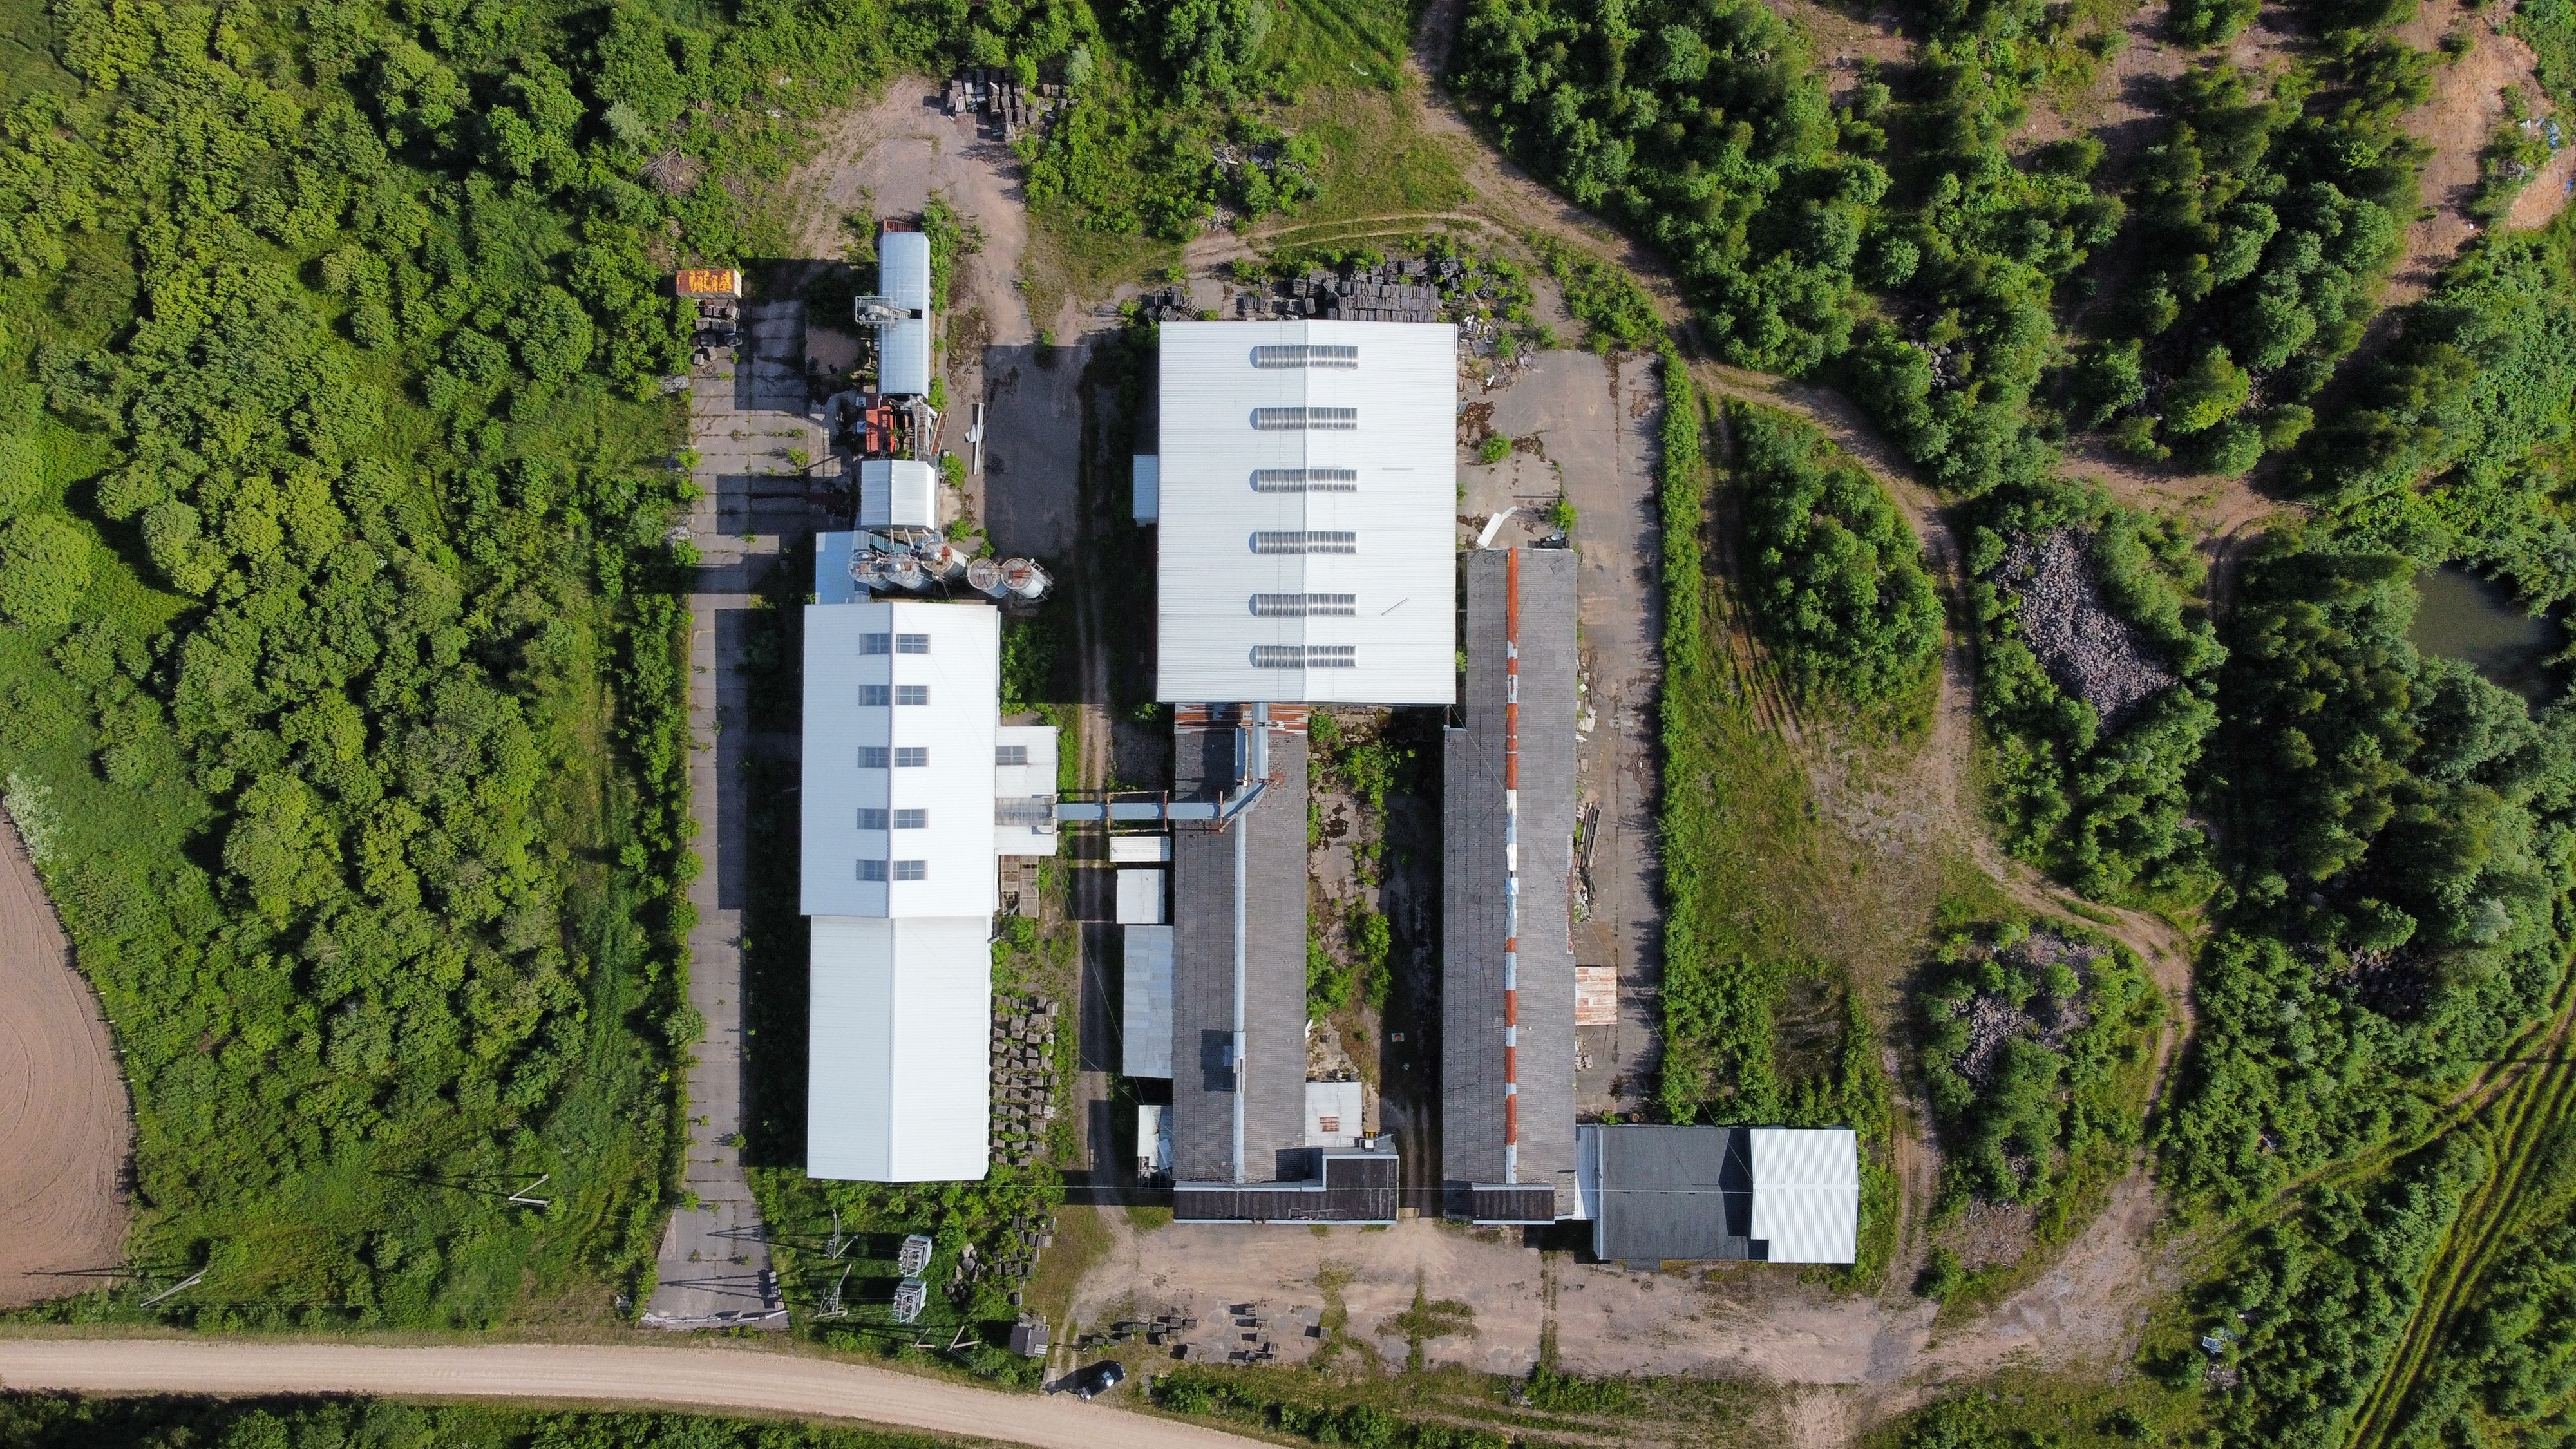 Warehouse for sale, Jūrkalni - Image 1